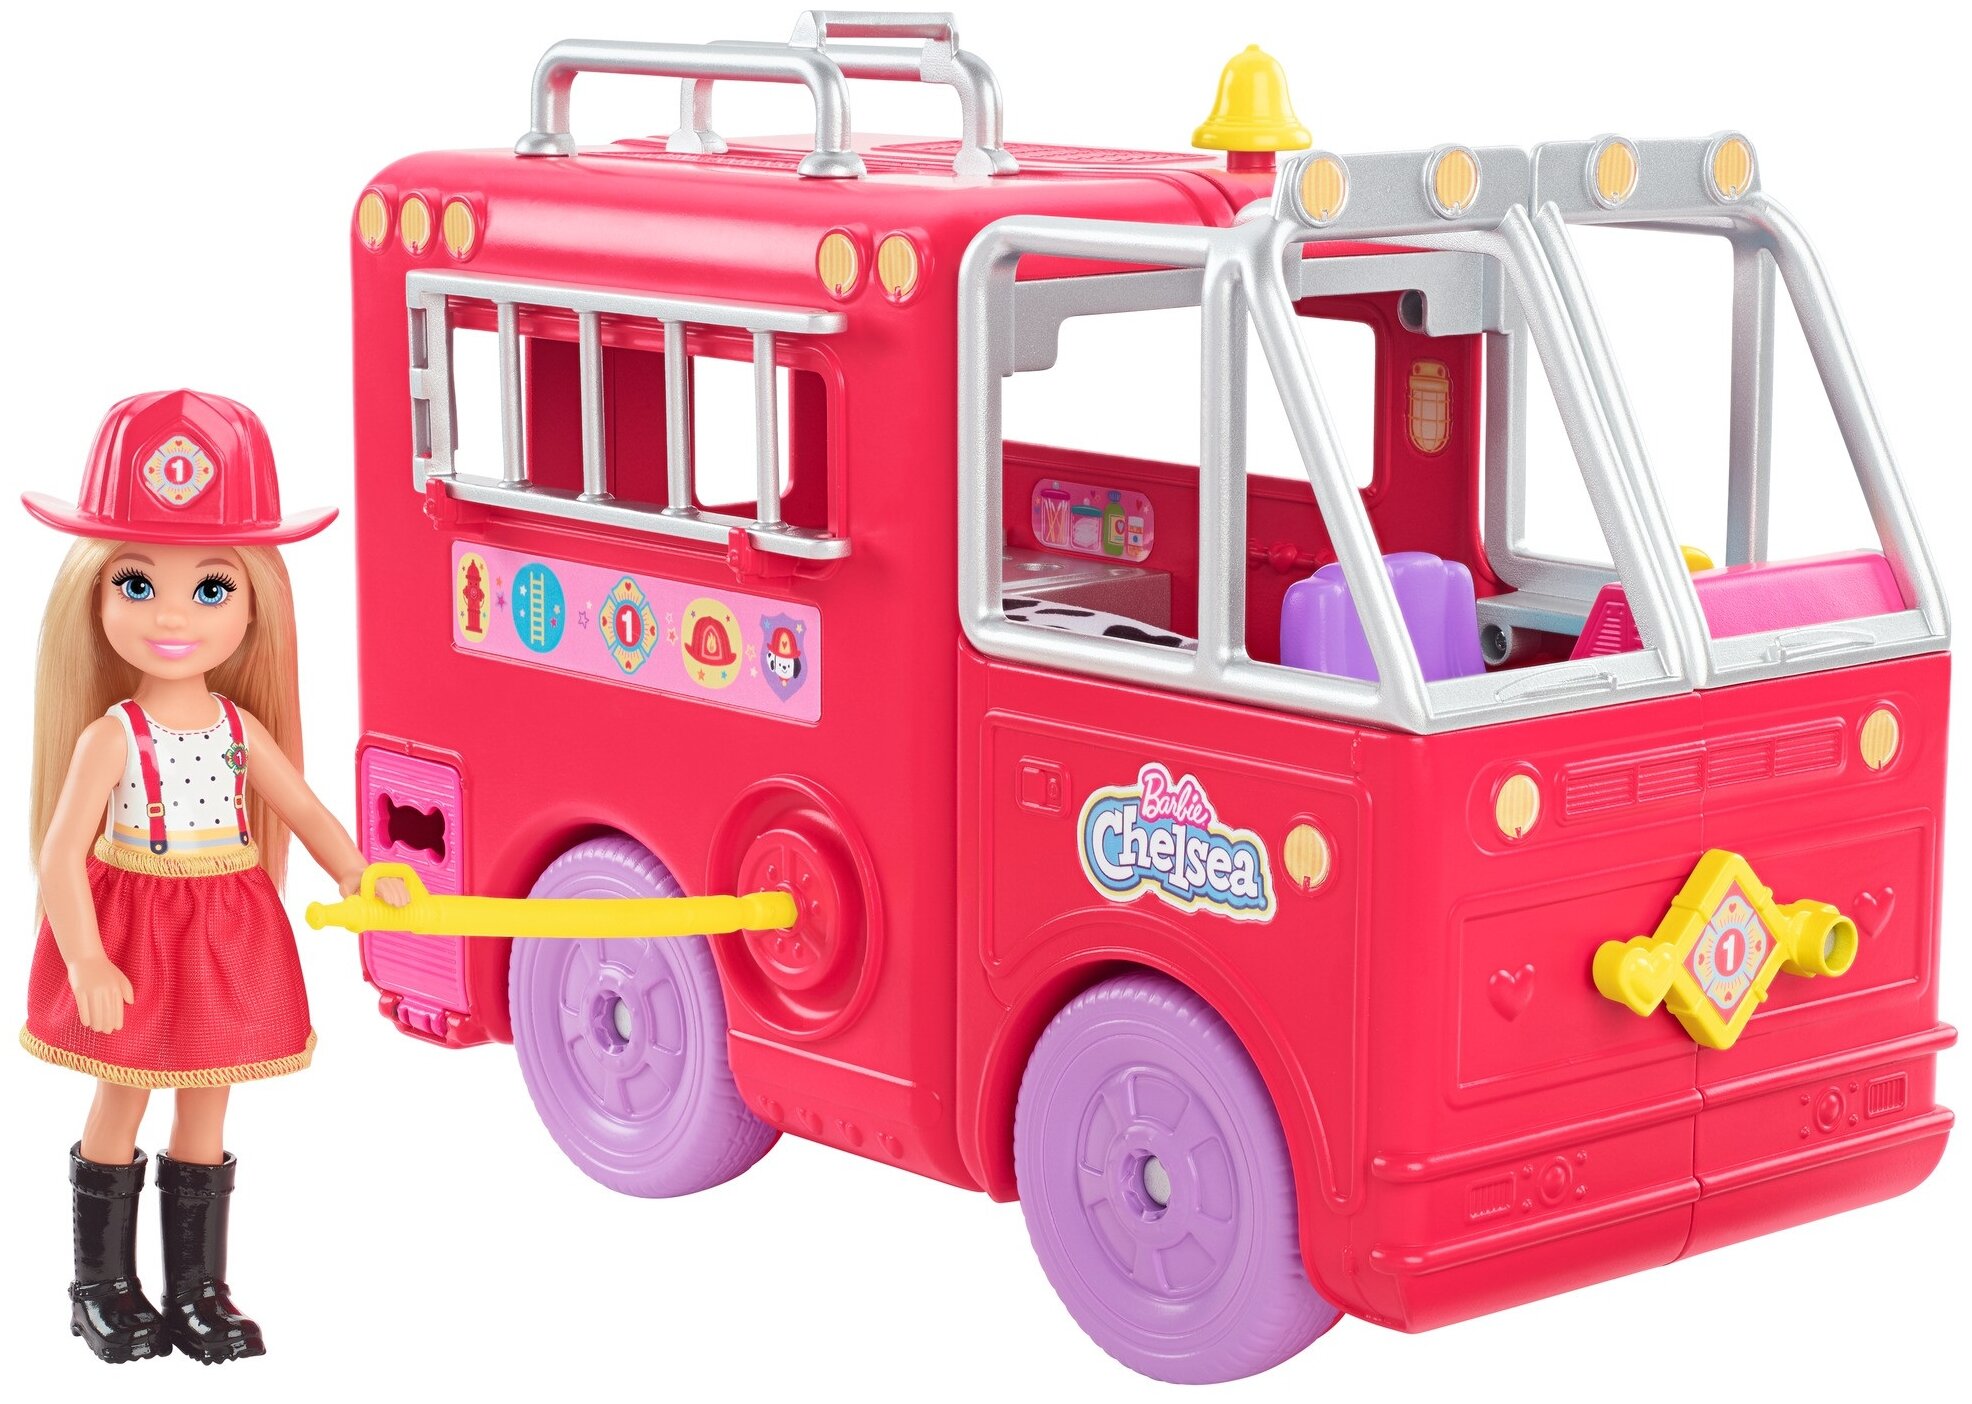 Игровой набор Barbie Челси и пожарная машина, HCK73 коралловый